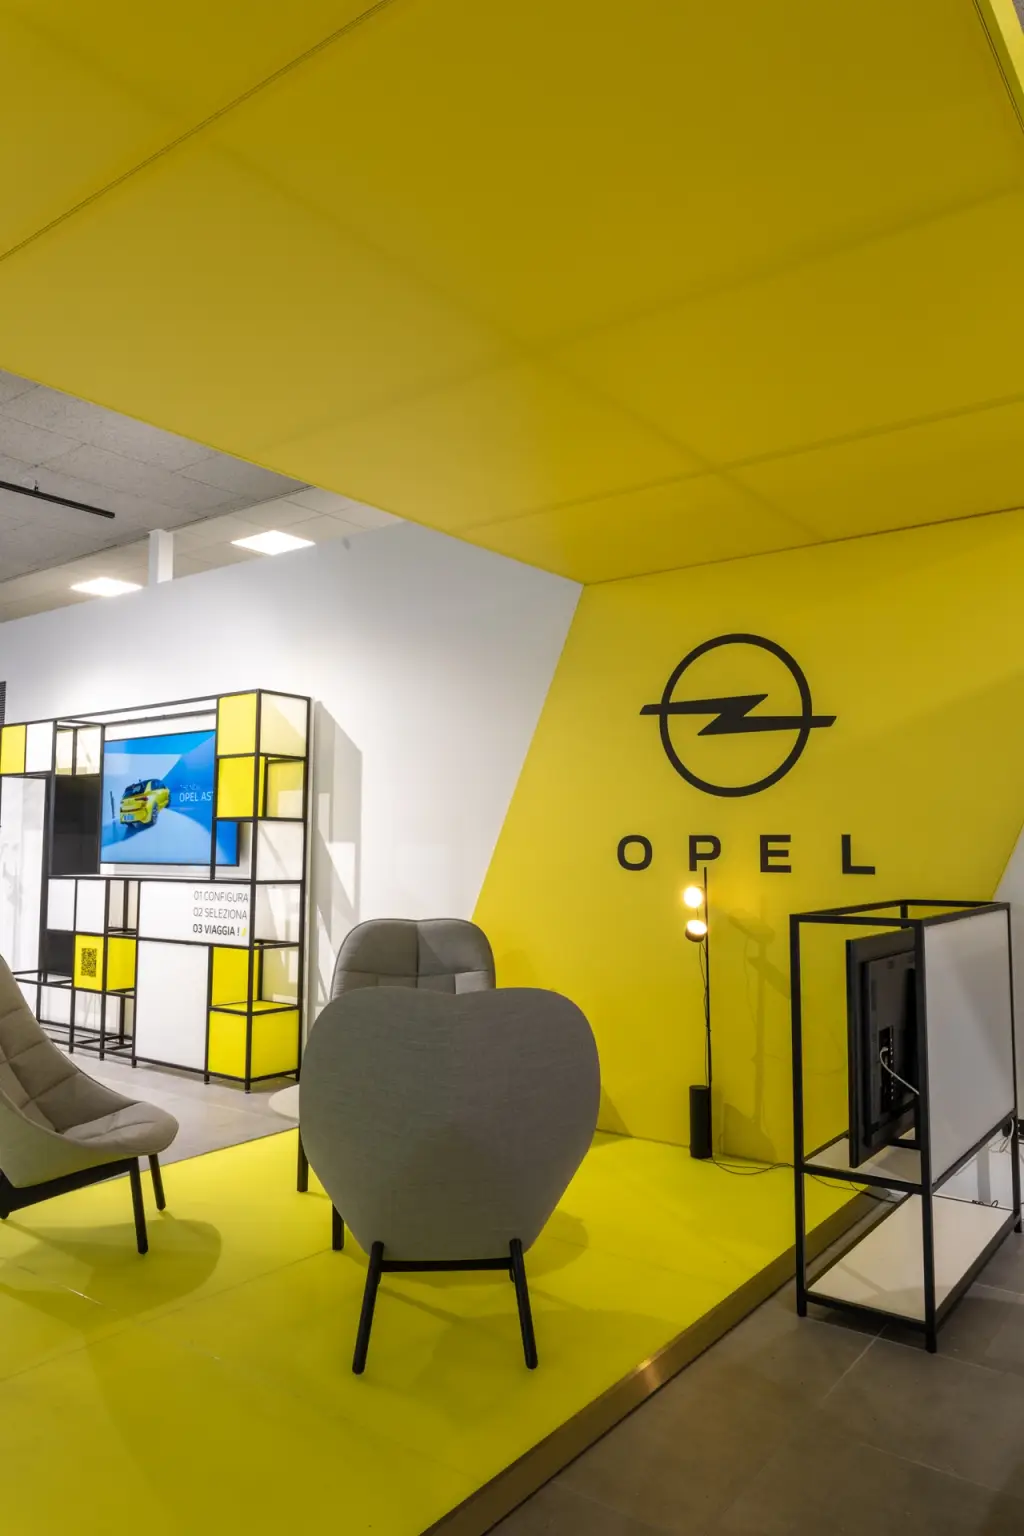 opel inaugura il primo salone di nuova generazione in italia [foto]